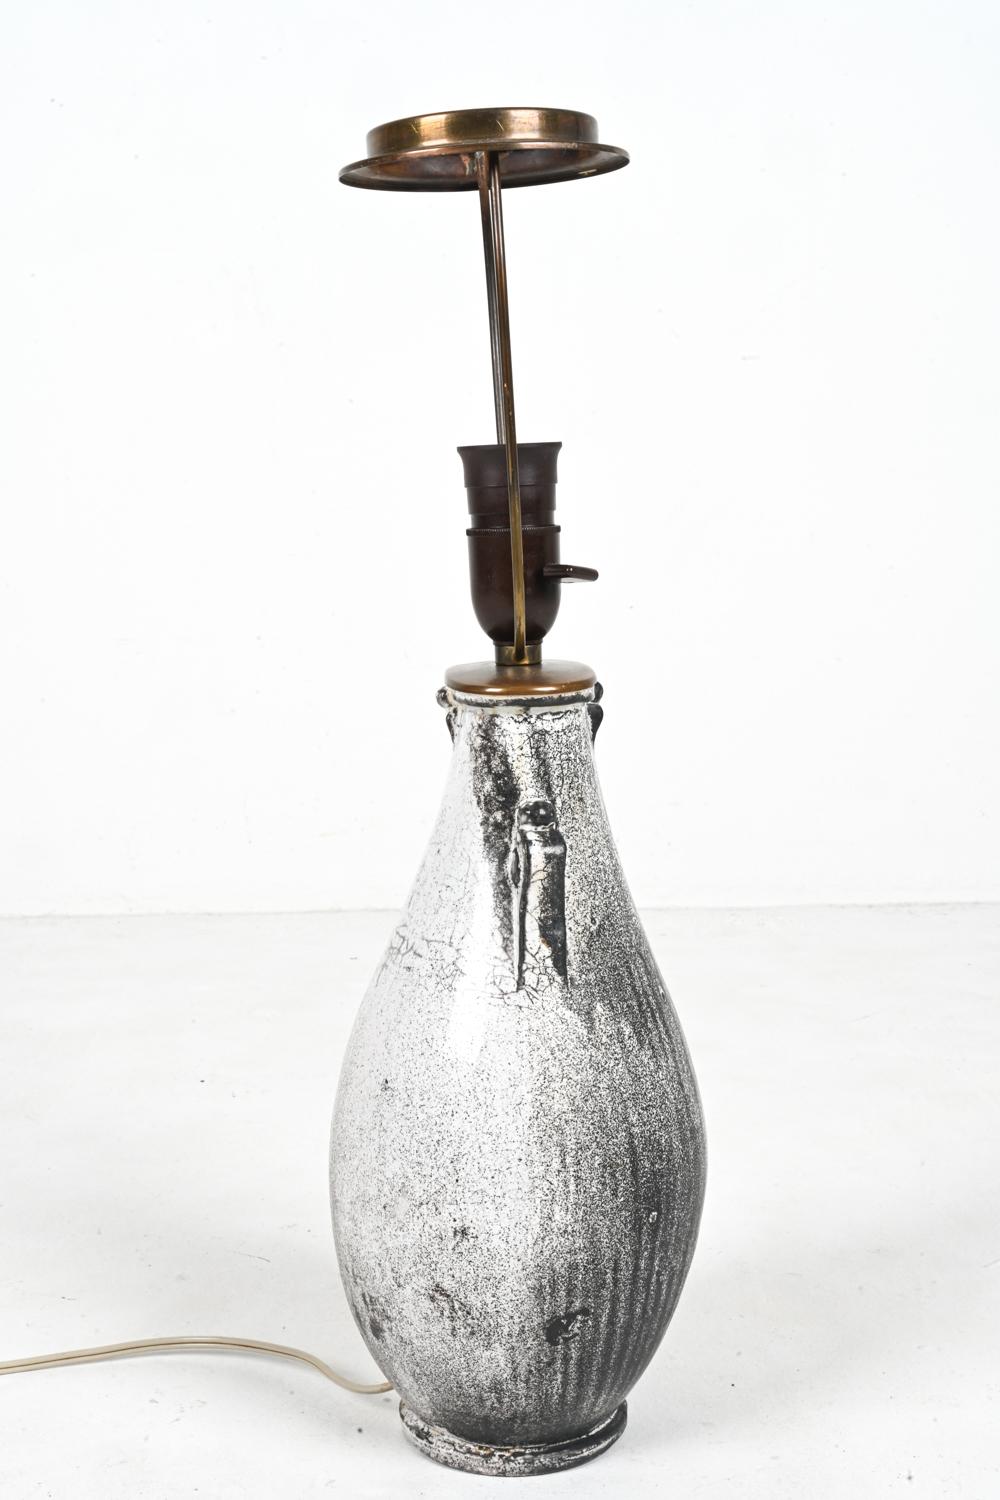 Rare Studio Ceramic Lamp by Svend Hammershøi for Kähler, Denmark, c. 1940 For Sale 9